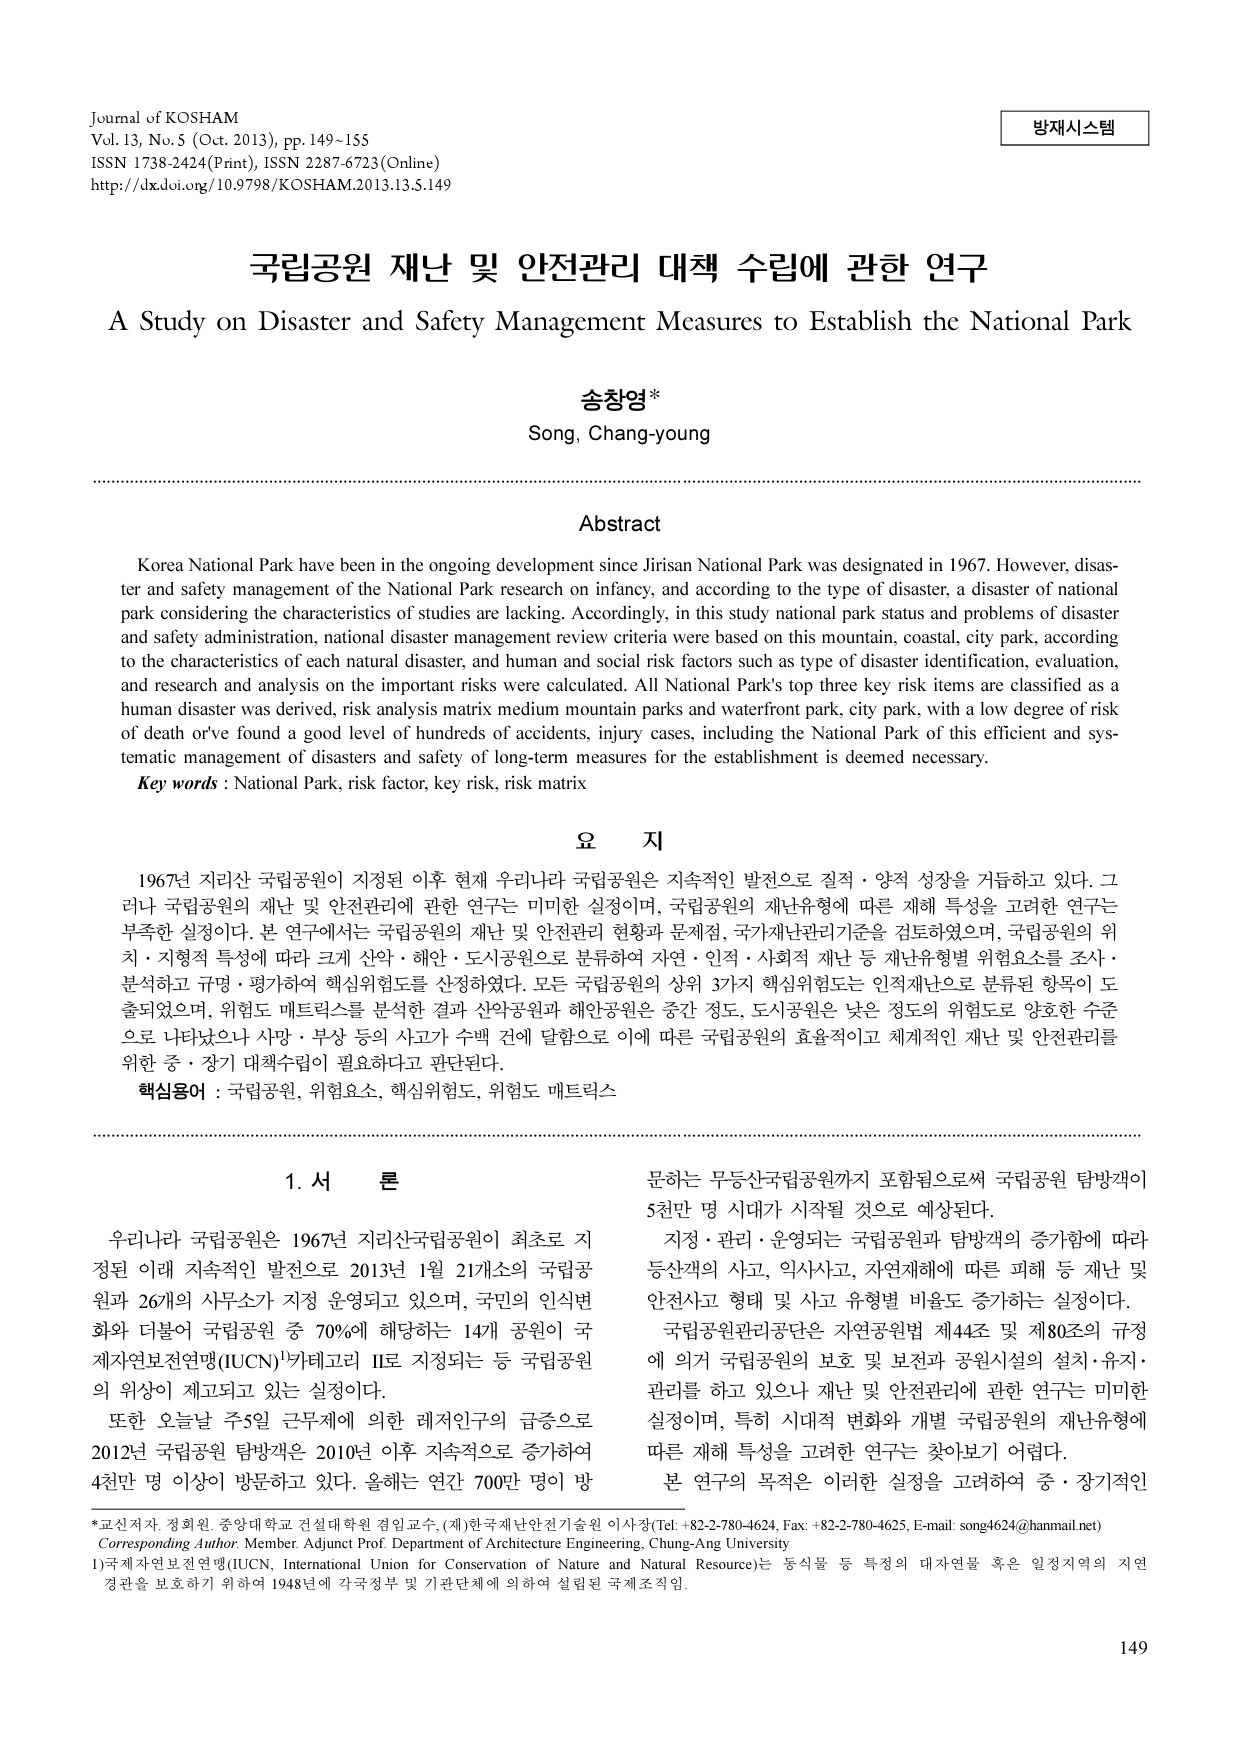 5. 국립공원 재난 및 안전관리 대책 수립에 관한 연구(한국방재학회,1310)-1.jpg